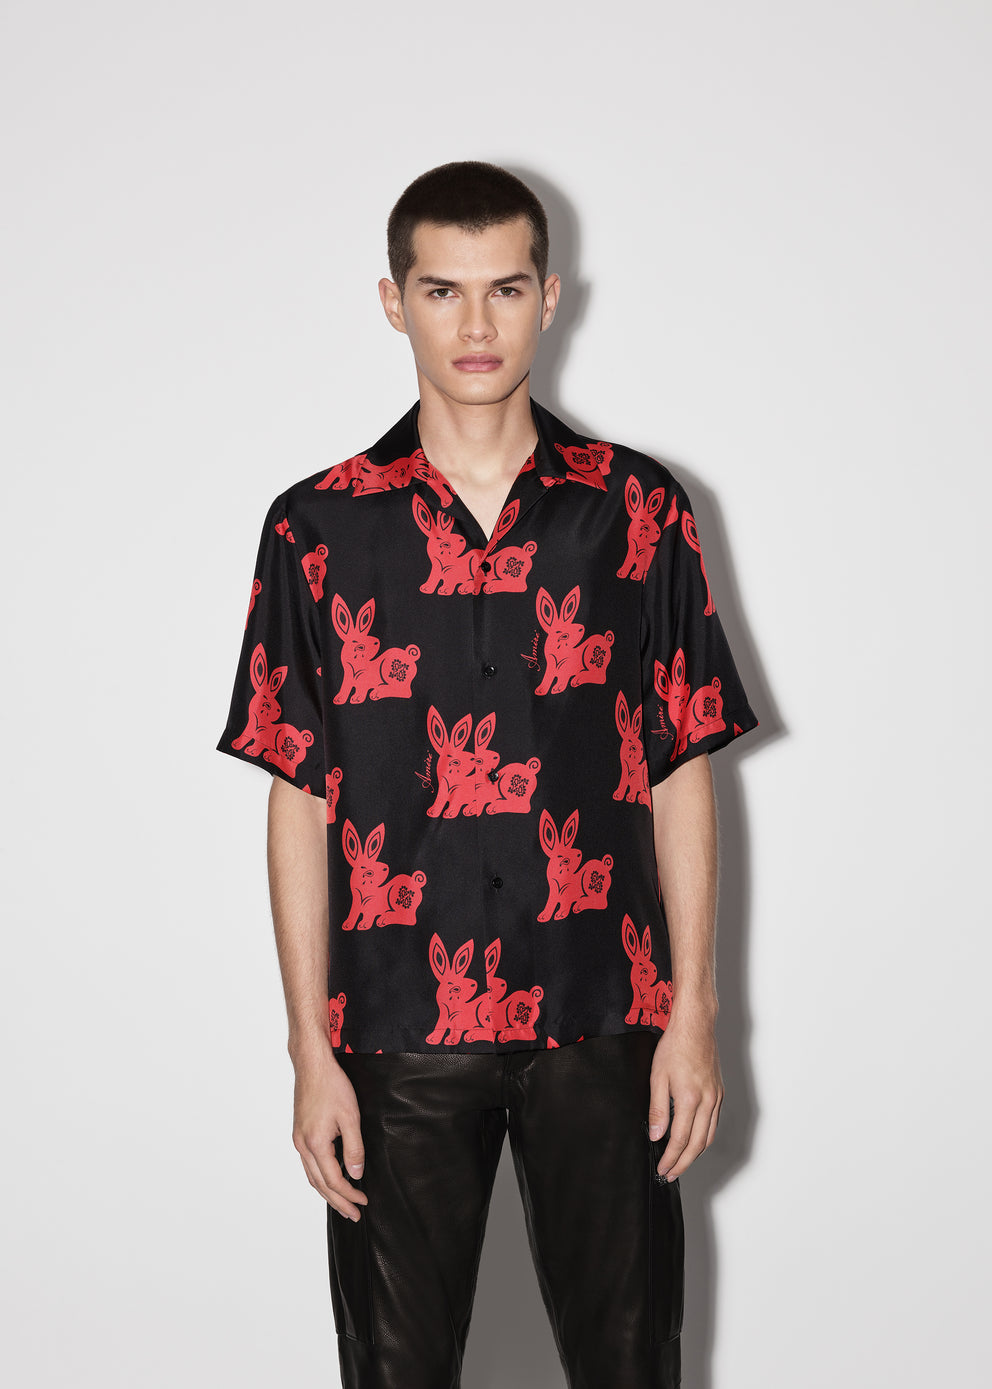 Camisas Amiri Rabbit Allover Bowling Hombre Negras Rojas | 3908CARGY